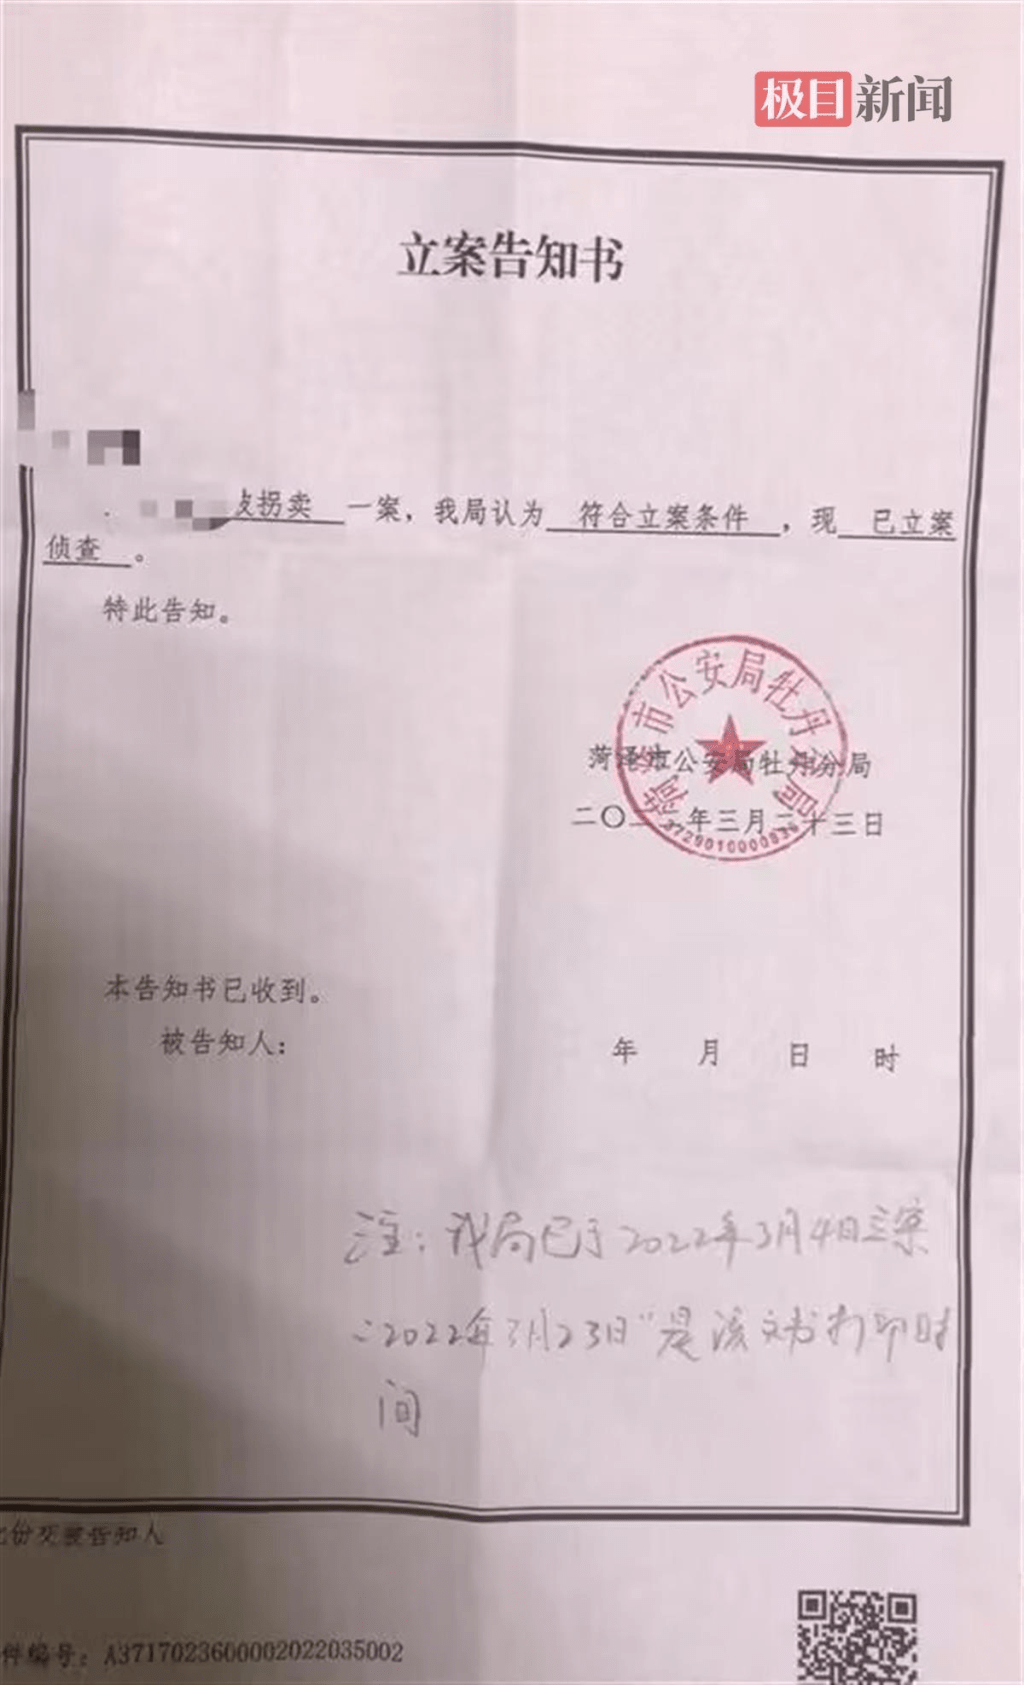 2022年3月初，郭丽决定追究当年拐卖她的人贩子的责任。菏泽警方立案侦查此案。